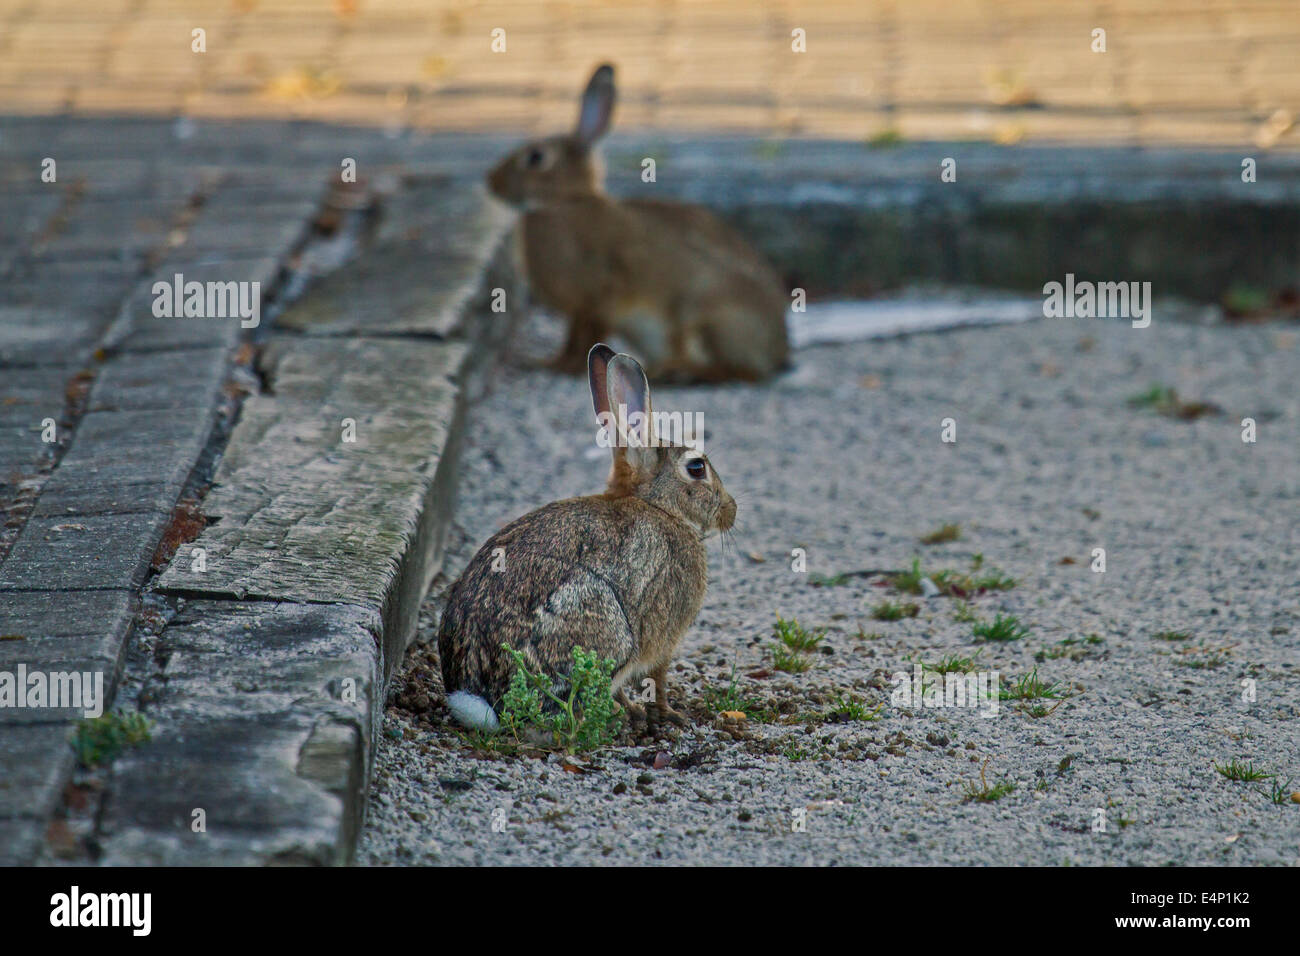 Deux lapins européen / lapin commun (Oryctolagus cuniculus) assis dans la rue Banque D'Images